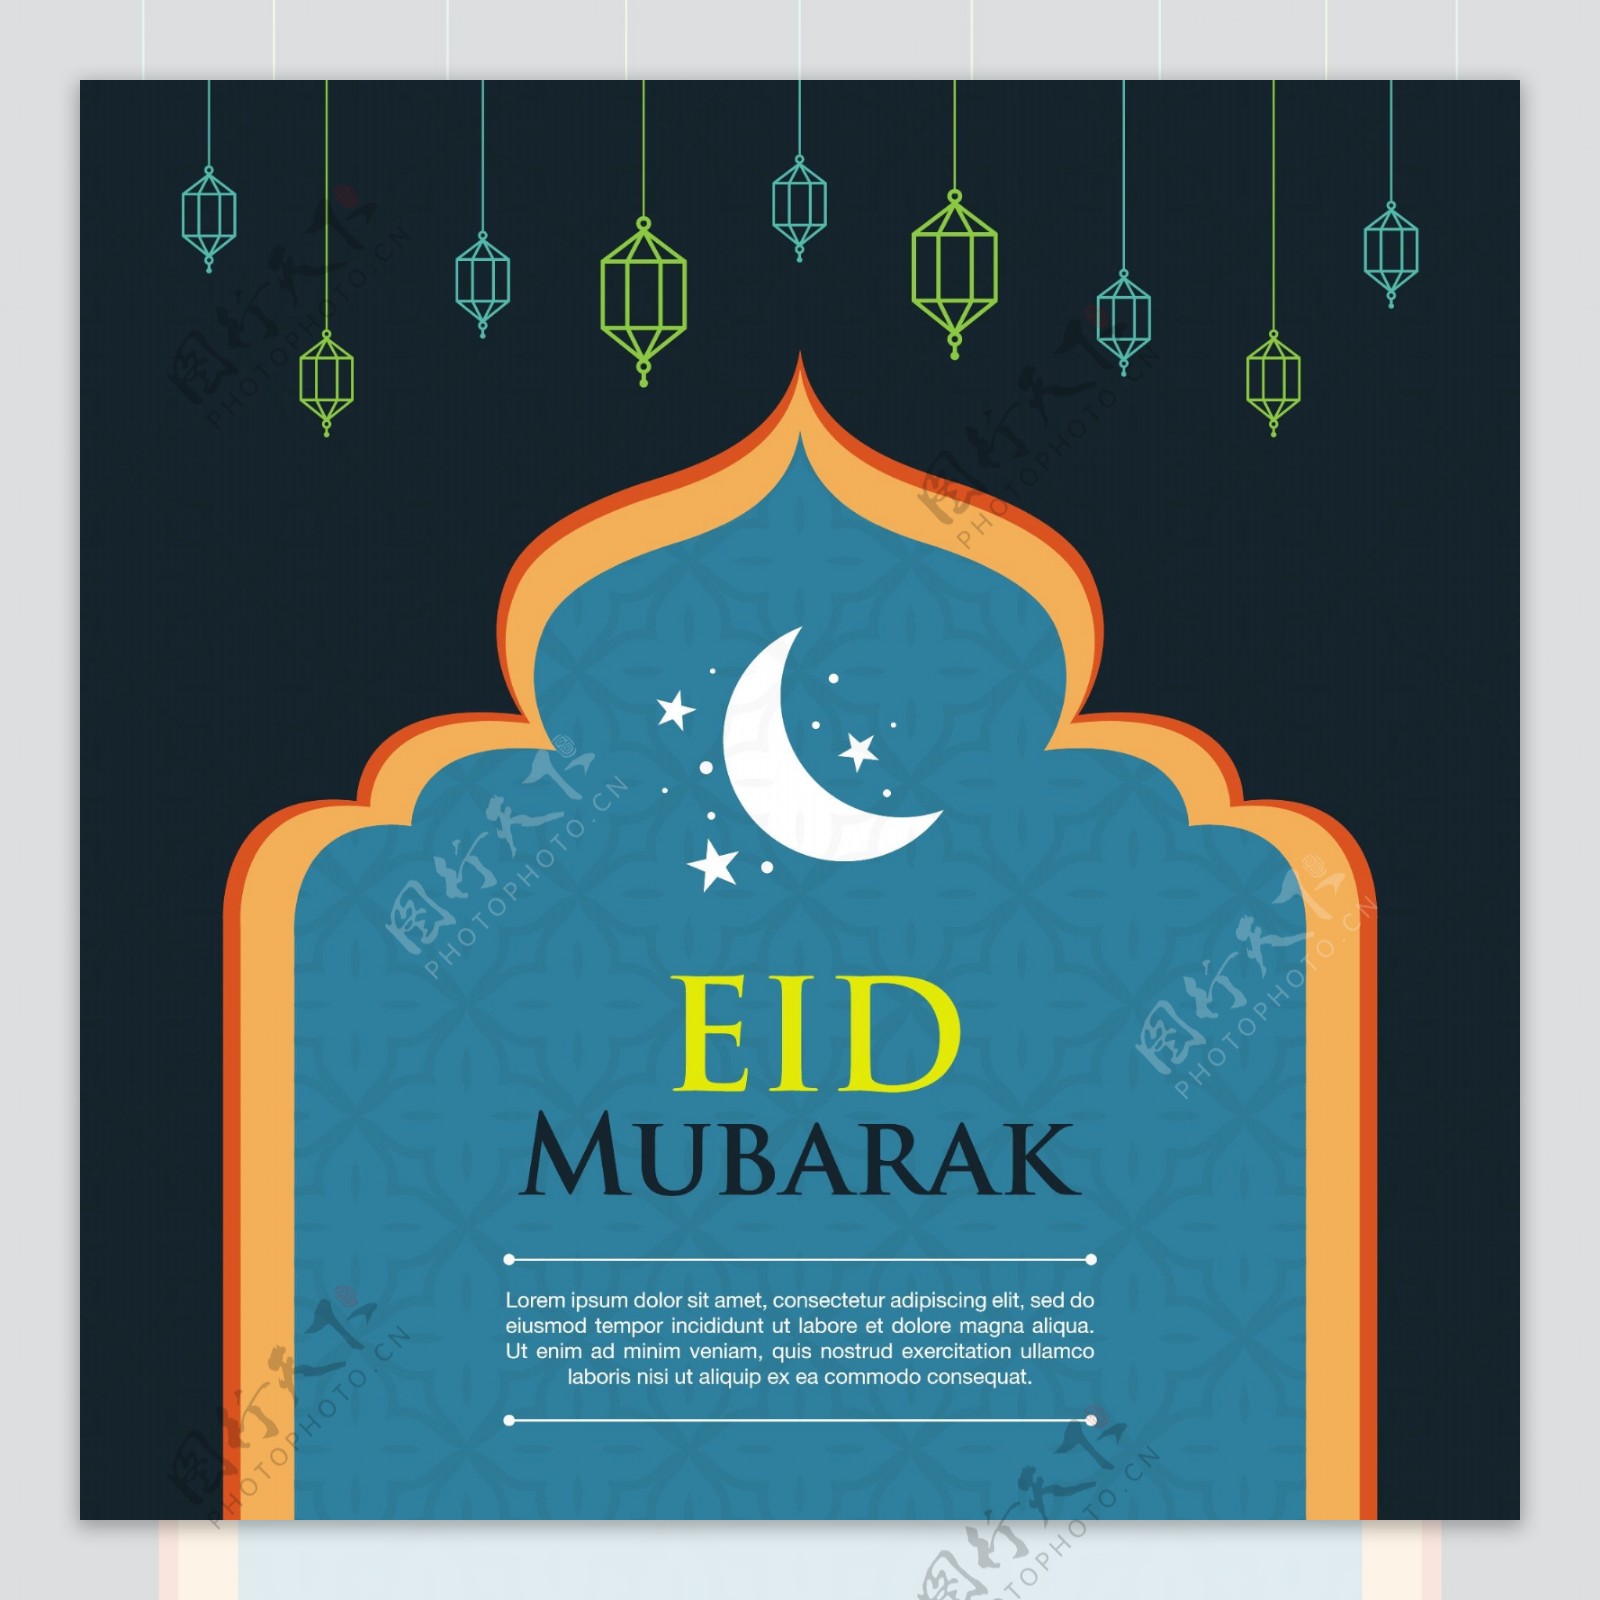 Eidmubarak的背景